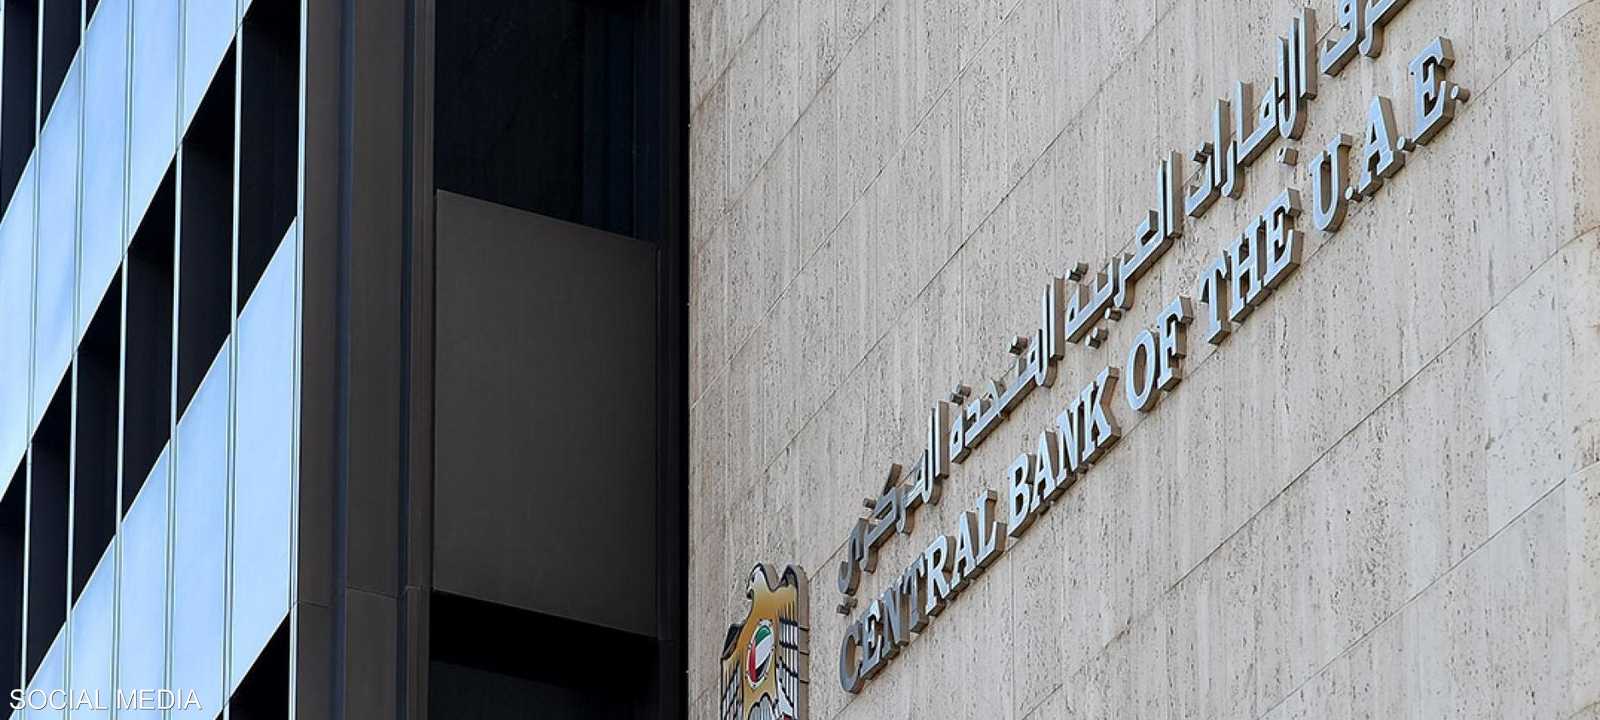 مصرف الإمارات المركزي - أرشيفية